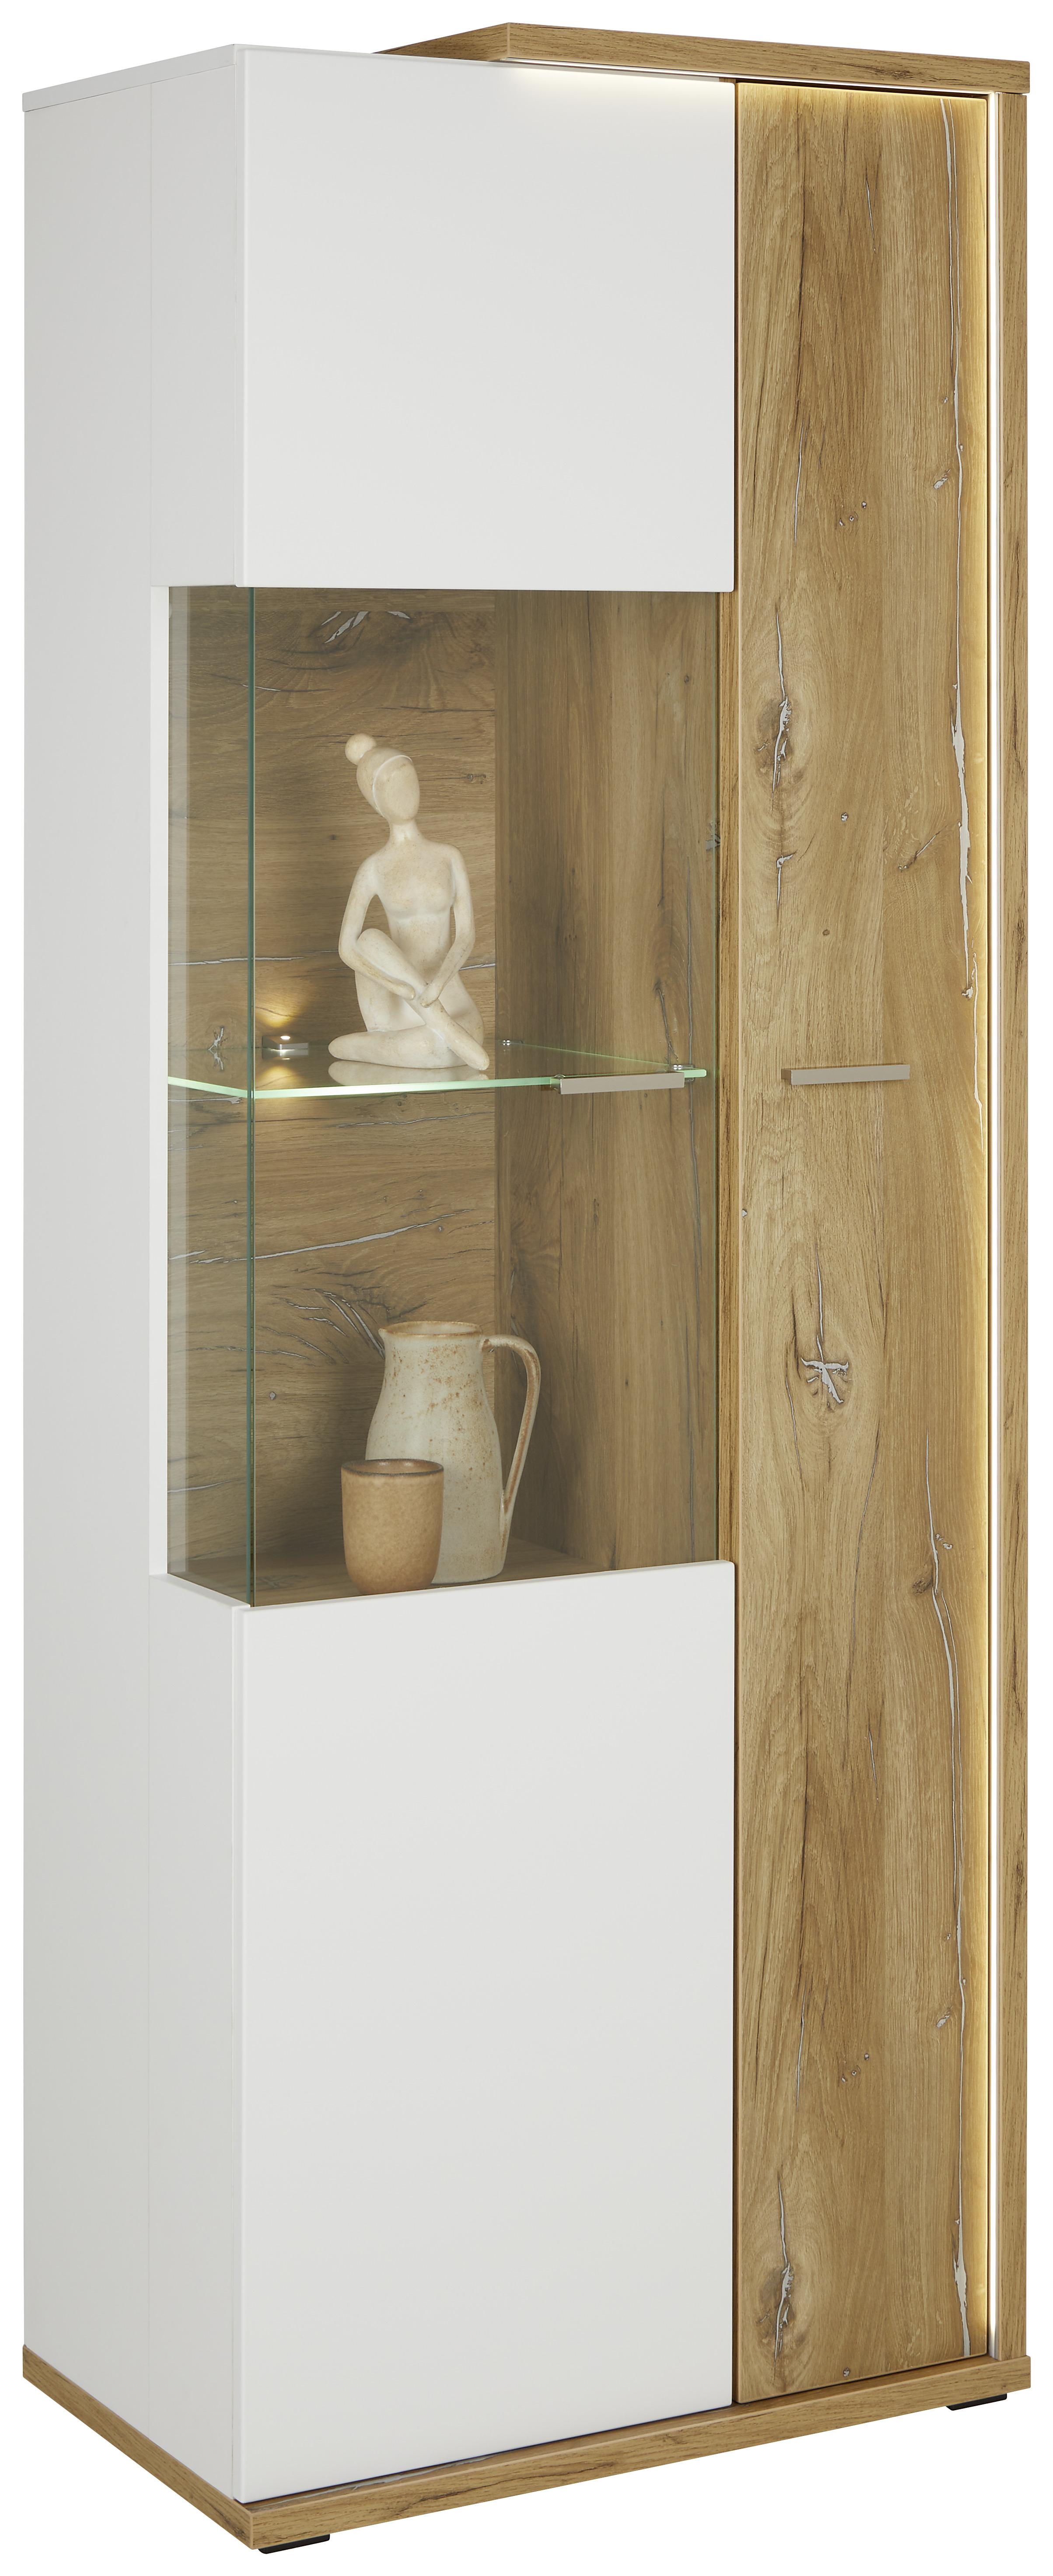 Vitrine in Weiß/Eichefarben - MODERN, Glas/Holzwerkstoff (73,5/199,1/43,6cm) - Modern Living